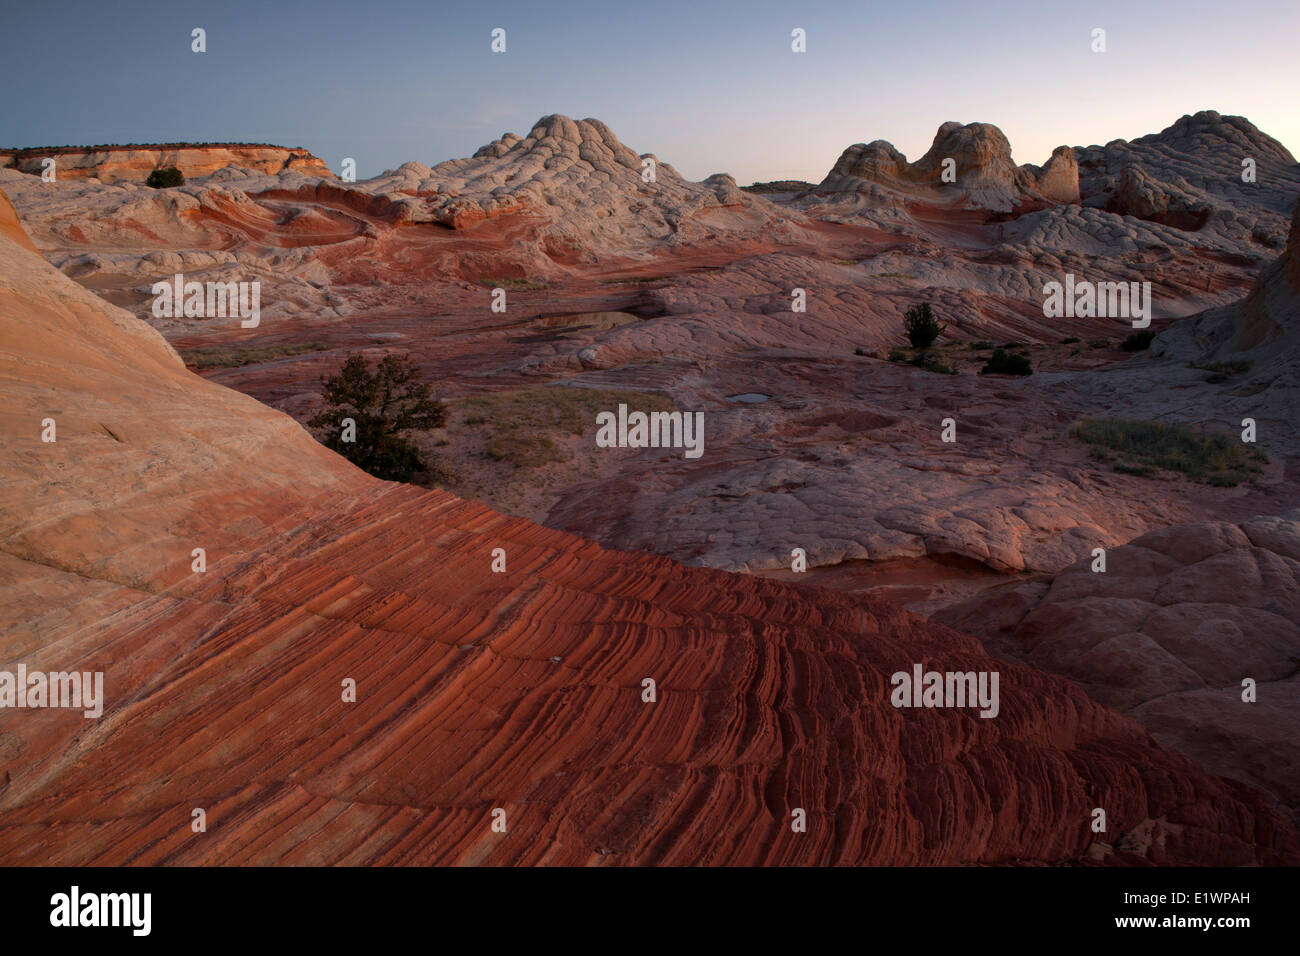 Sandstein-Formationen bei Sonnenuntergang am White Pocket, Paria Canyon - Vermillion Cliffs Wilderness, Arizona, Vereinigte Staaten Stockfoto